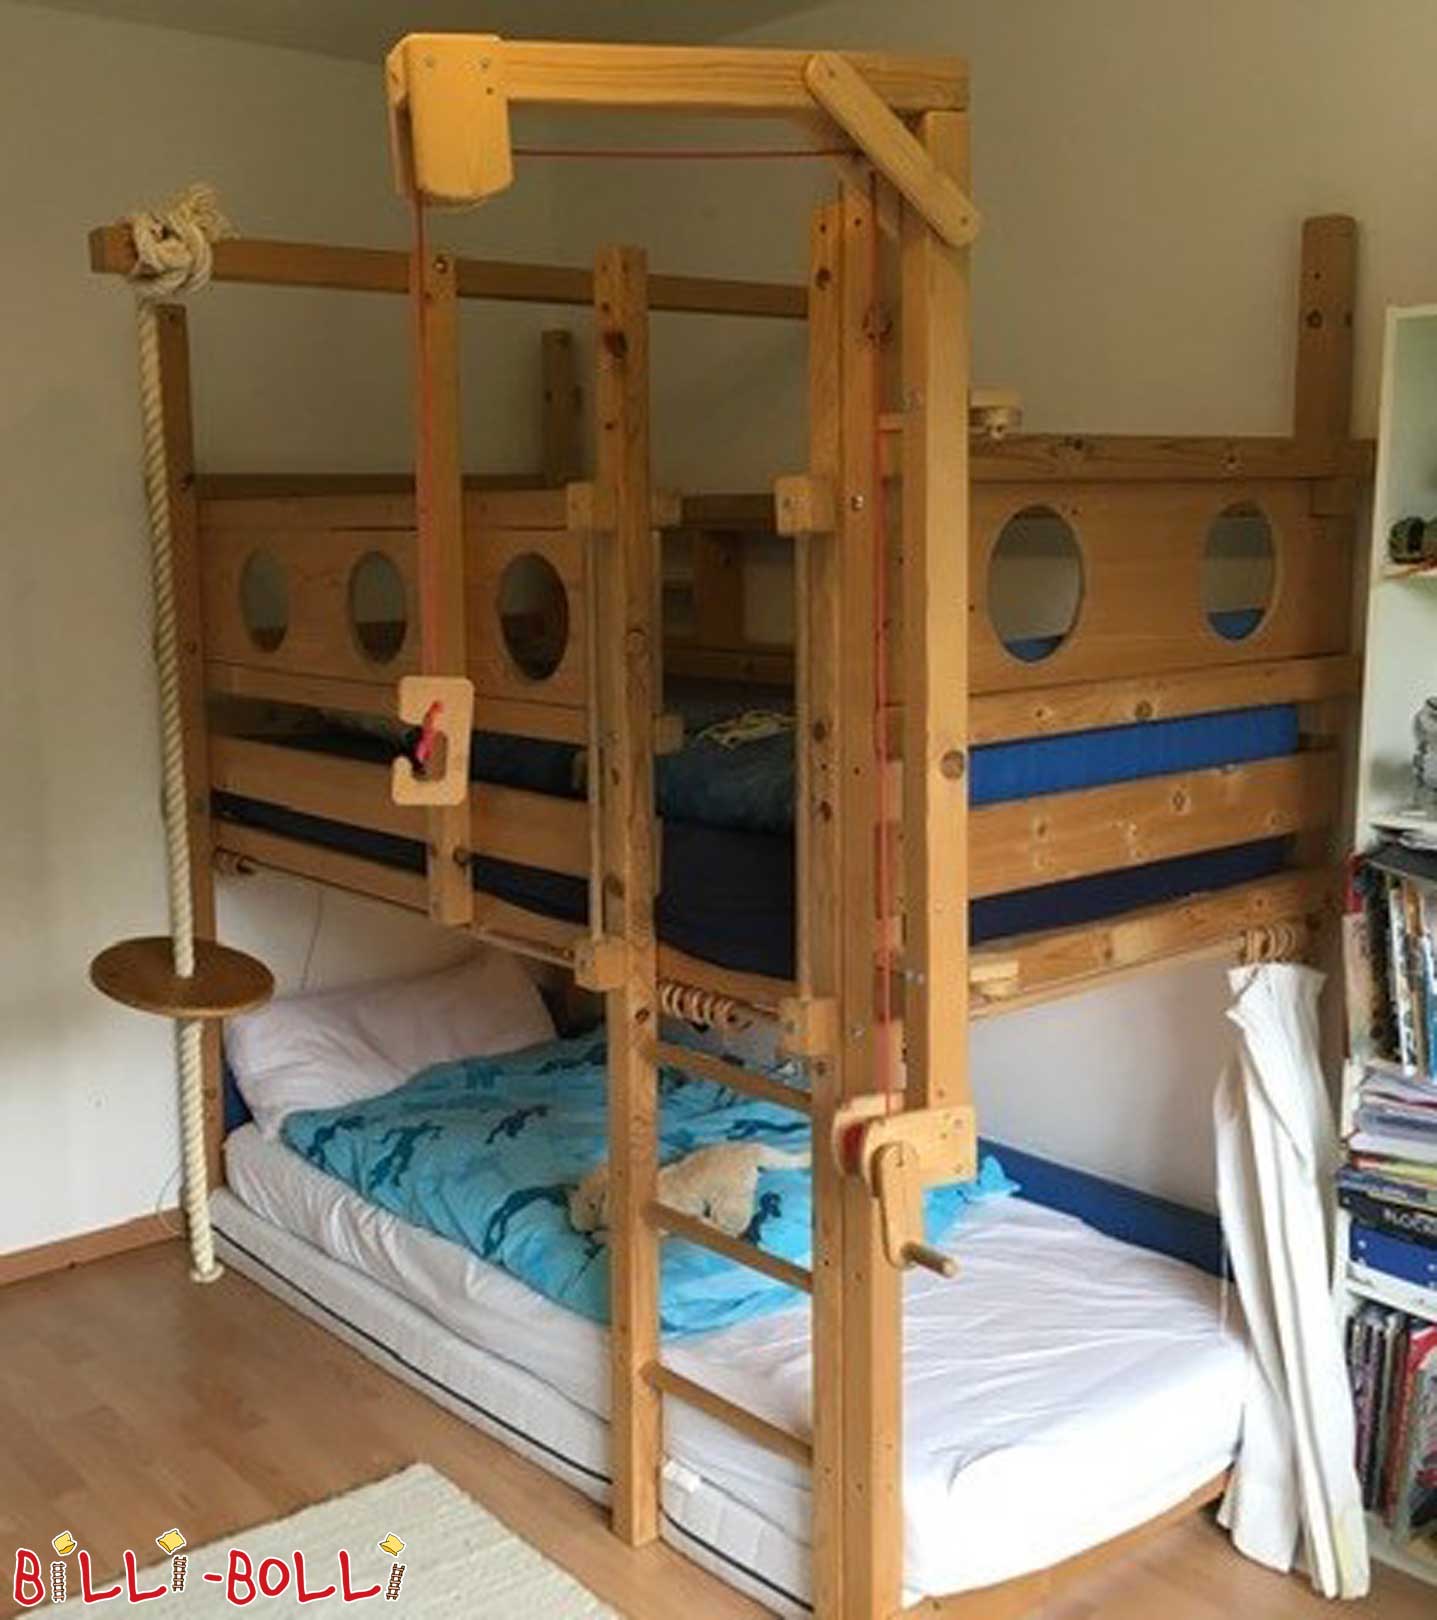 Łóżko na poddaszu, które rośnie wraz z dzieckiem (Kategoria: Używane łóżko na poddaszu)